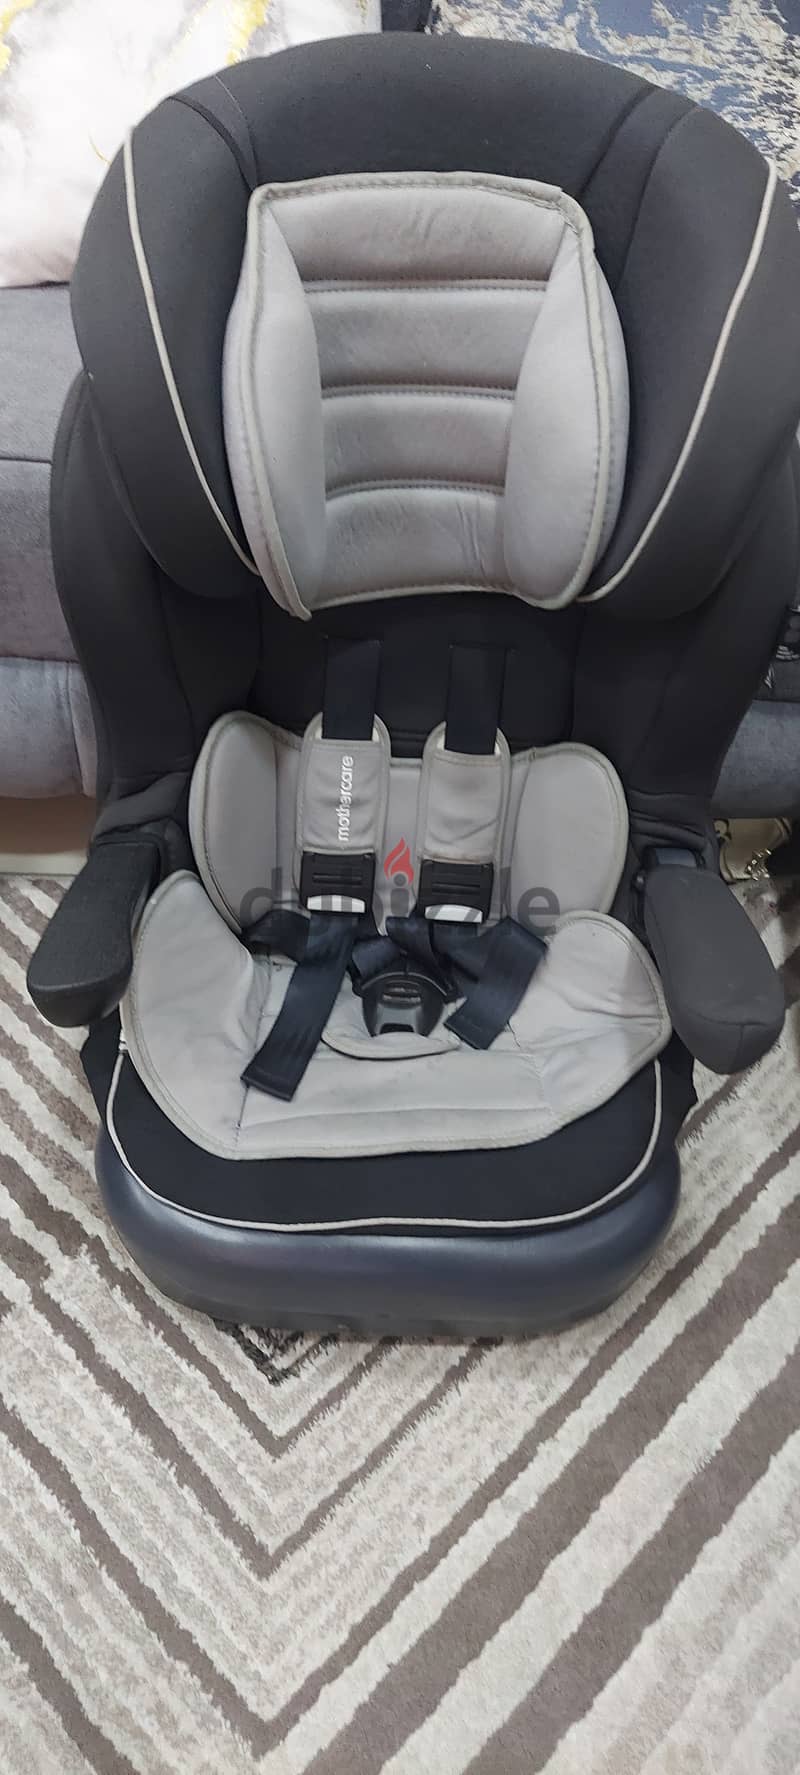 Baby Car Seat 2